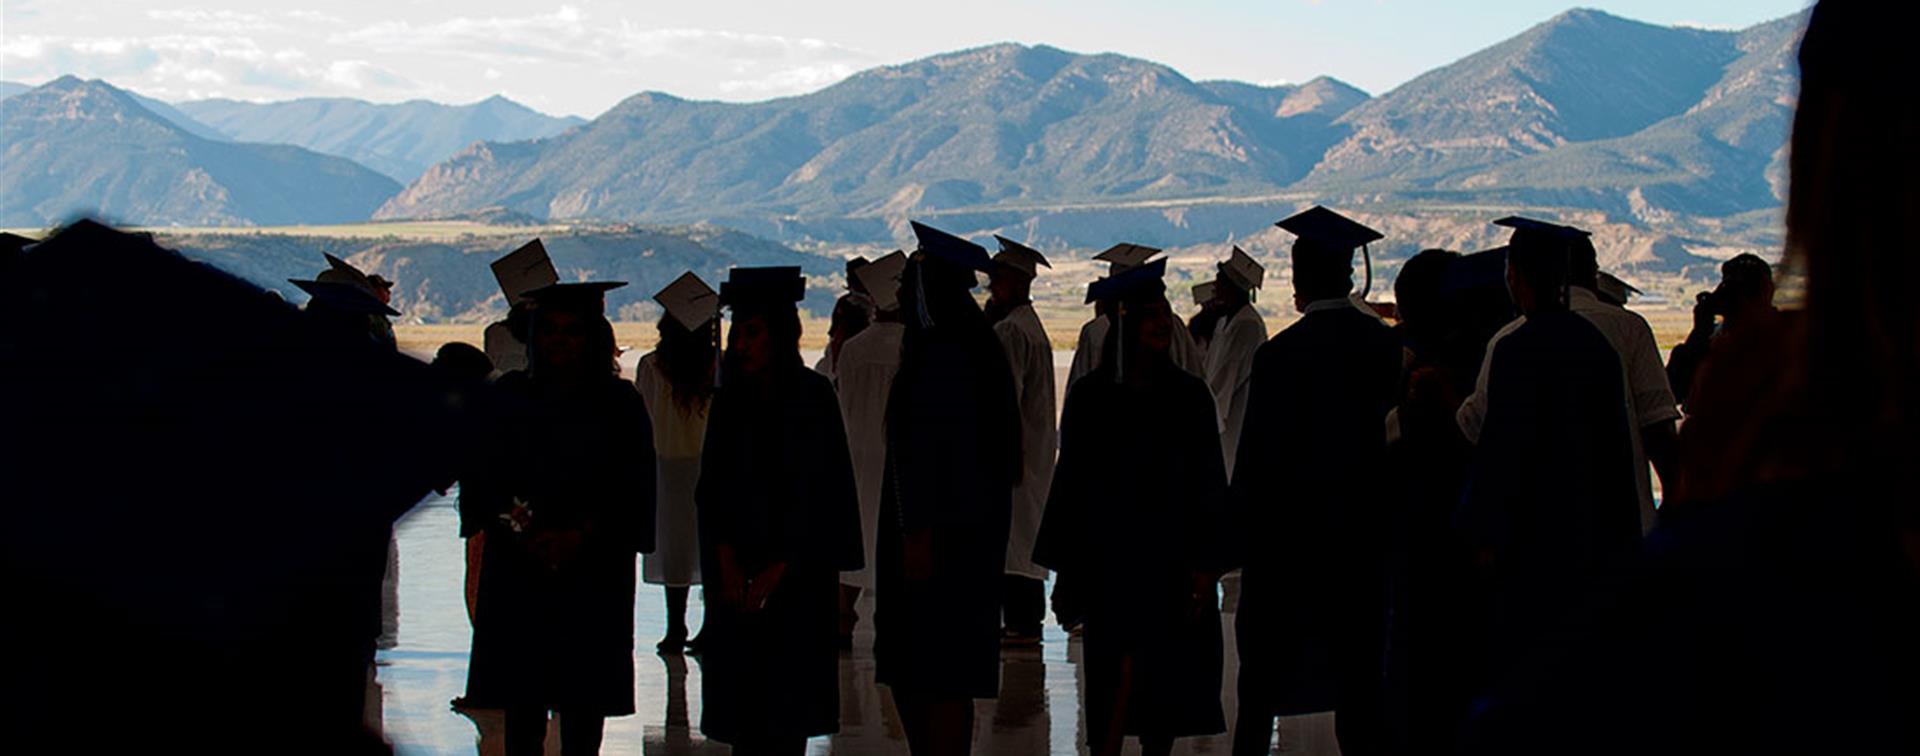 Colorado Mountain College graduates standing before a mountain backdrop